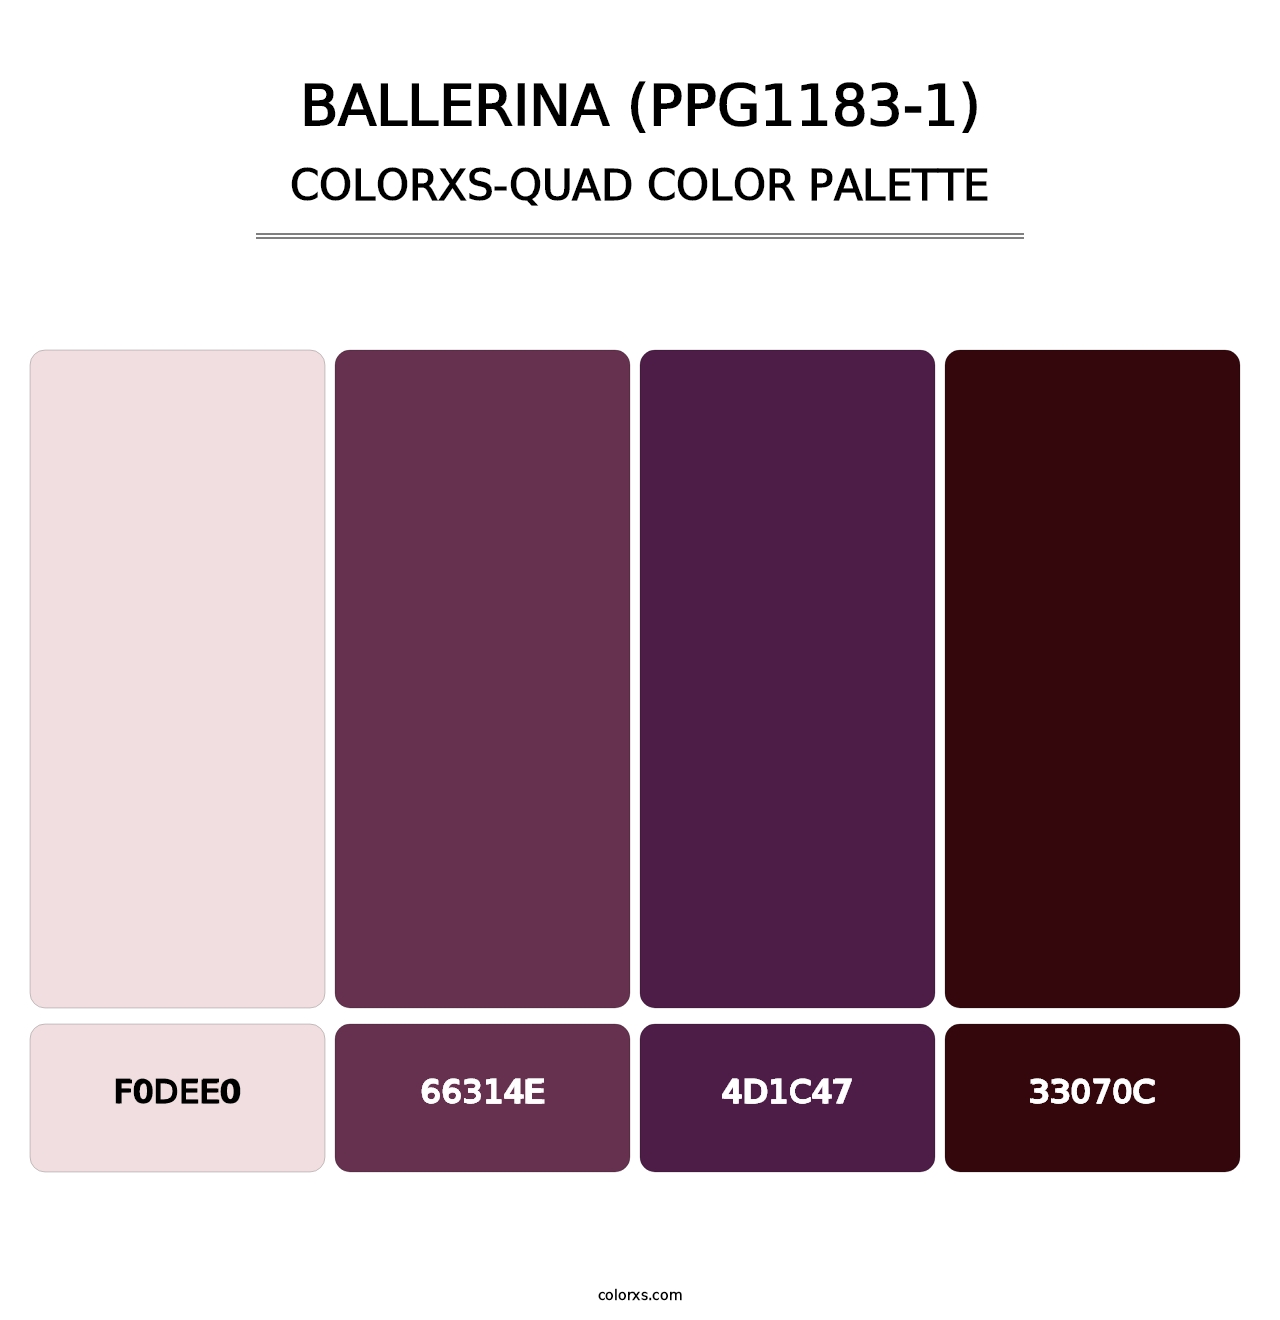 Ballerina (PPG1183-1) - Colorxs Quad Palette